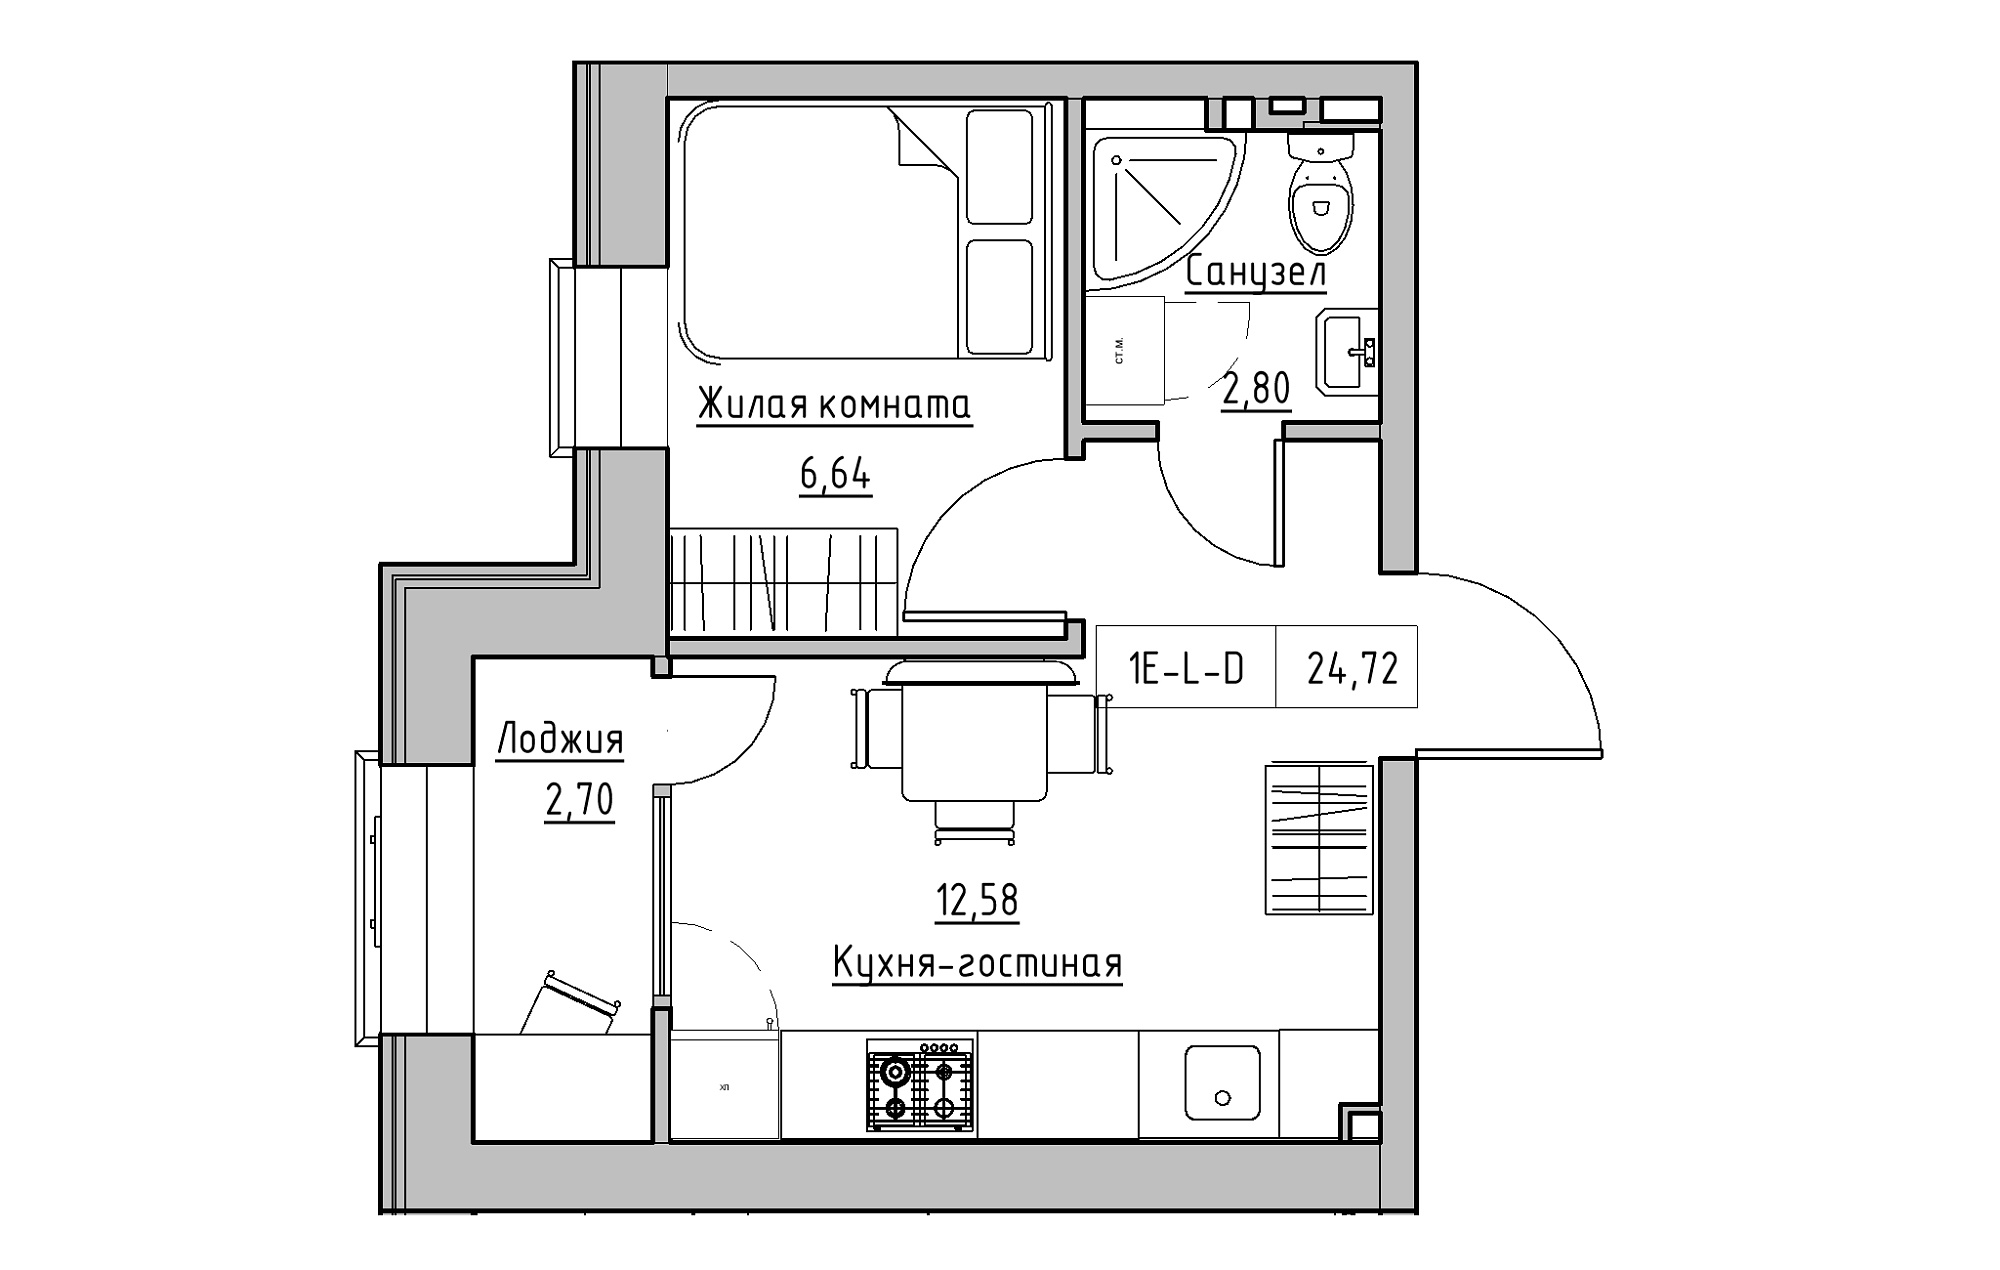 Планування 1-к квартира площею 24.72м2, KS-018-05/0016.